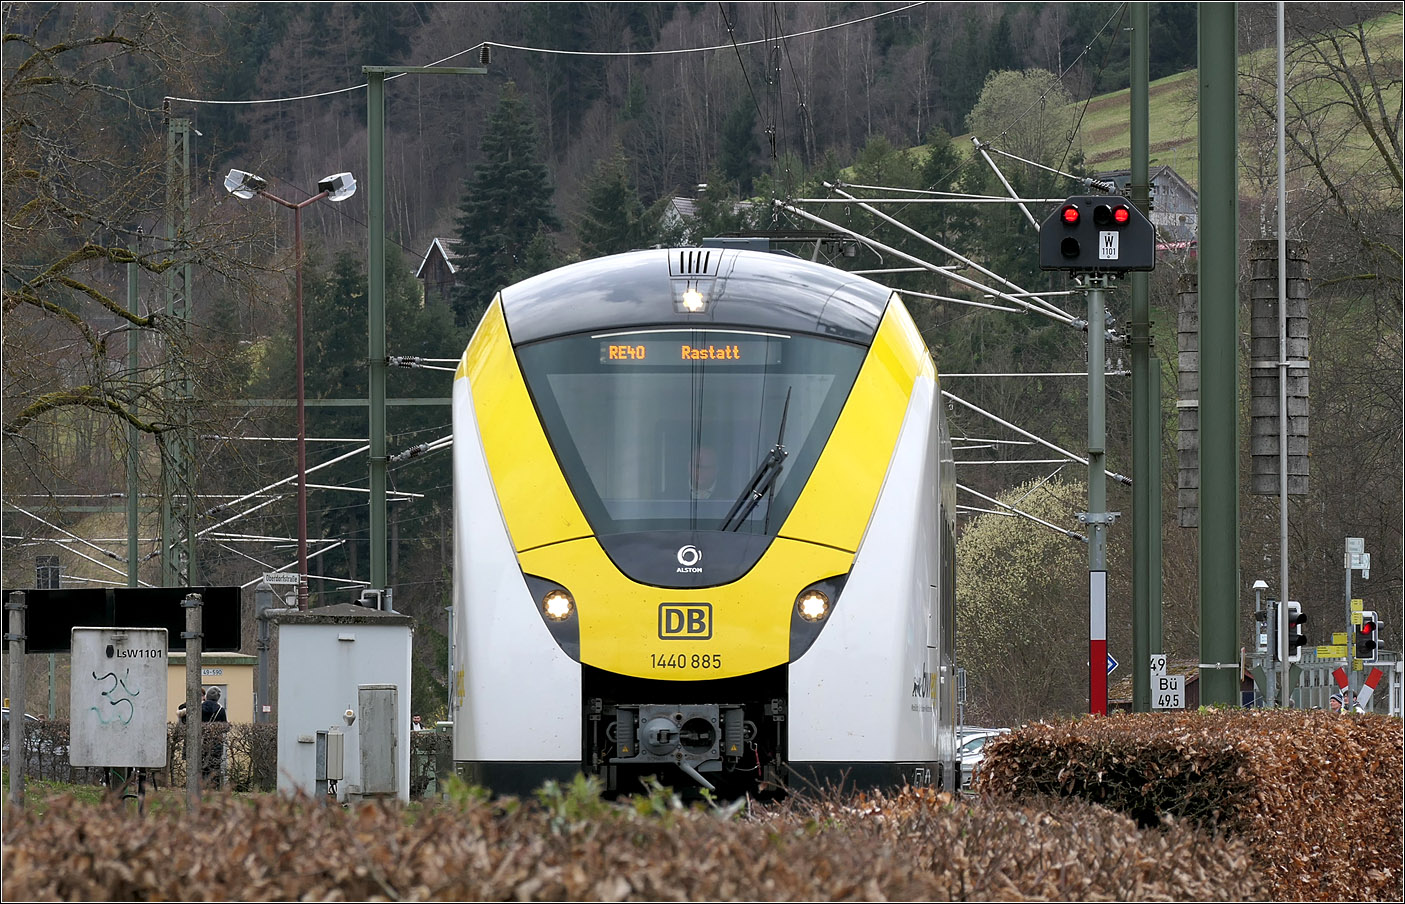 Grinsekatze in Baiersbronn - 

Coradia Continental 2-Triebzug 1440 885 kurz nach der Abfahrt im Bahnhof Baiersbronn. Als die Murgtalbahn für den Stadtbahnbetrieb elektrifiziert wurde, sollen ursprünglich auch Triebzüge der Baureihe 425 die Strecke befahren. Diese erhielten allerdings keine Zulassung für die Steilstrecke von Baiersbronn nach Freudenstadt. So wurde der Betrieb der Strecke ausschließlich mit AVG-Stadtbahnwagen durchgeführt, die teils auch als Eilzüge fuhren. Man konnte mit der Stadtbahn von Freudenstadt über die Innenstadt von Karlsruhe bis Heilbronn durchfahren. Inzwischen enden die Stadtbahnzüge in Karlsruhe an der Haltestelle Tulastraße und die Eilzüge wurden durch die Coradia Continental 2-Triebzüge ersetzt, die natürlich nicht durch die Karlsruhe Innenstadt fahren. 

15.03.2024 (M)